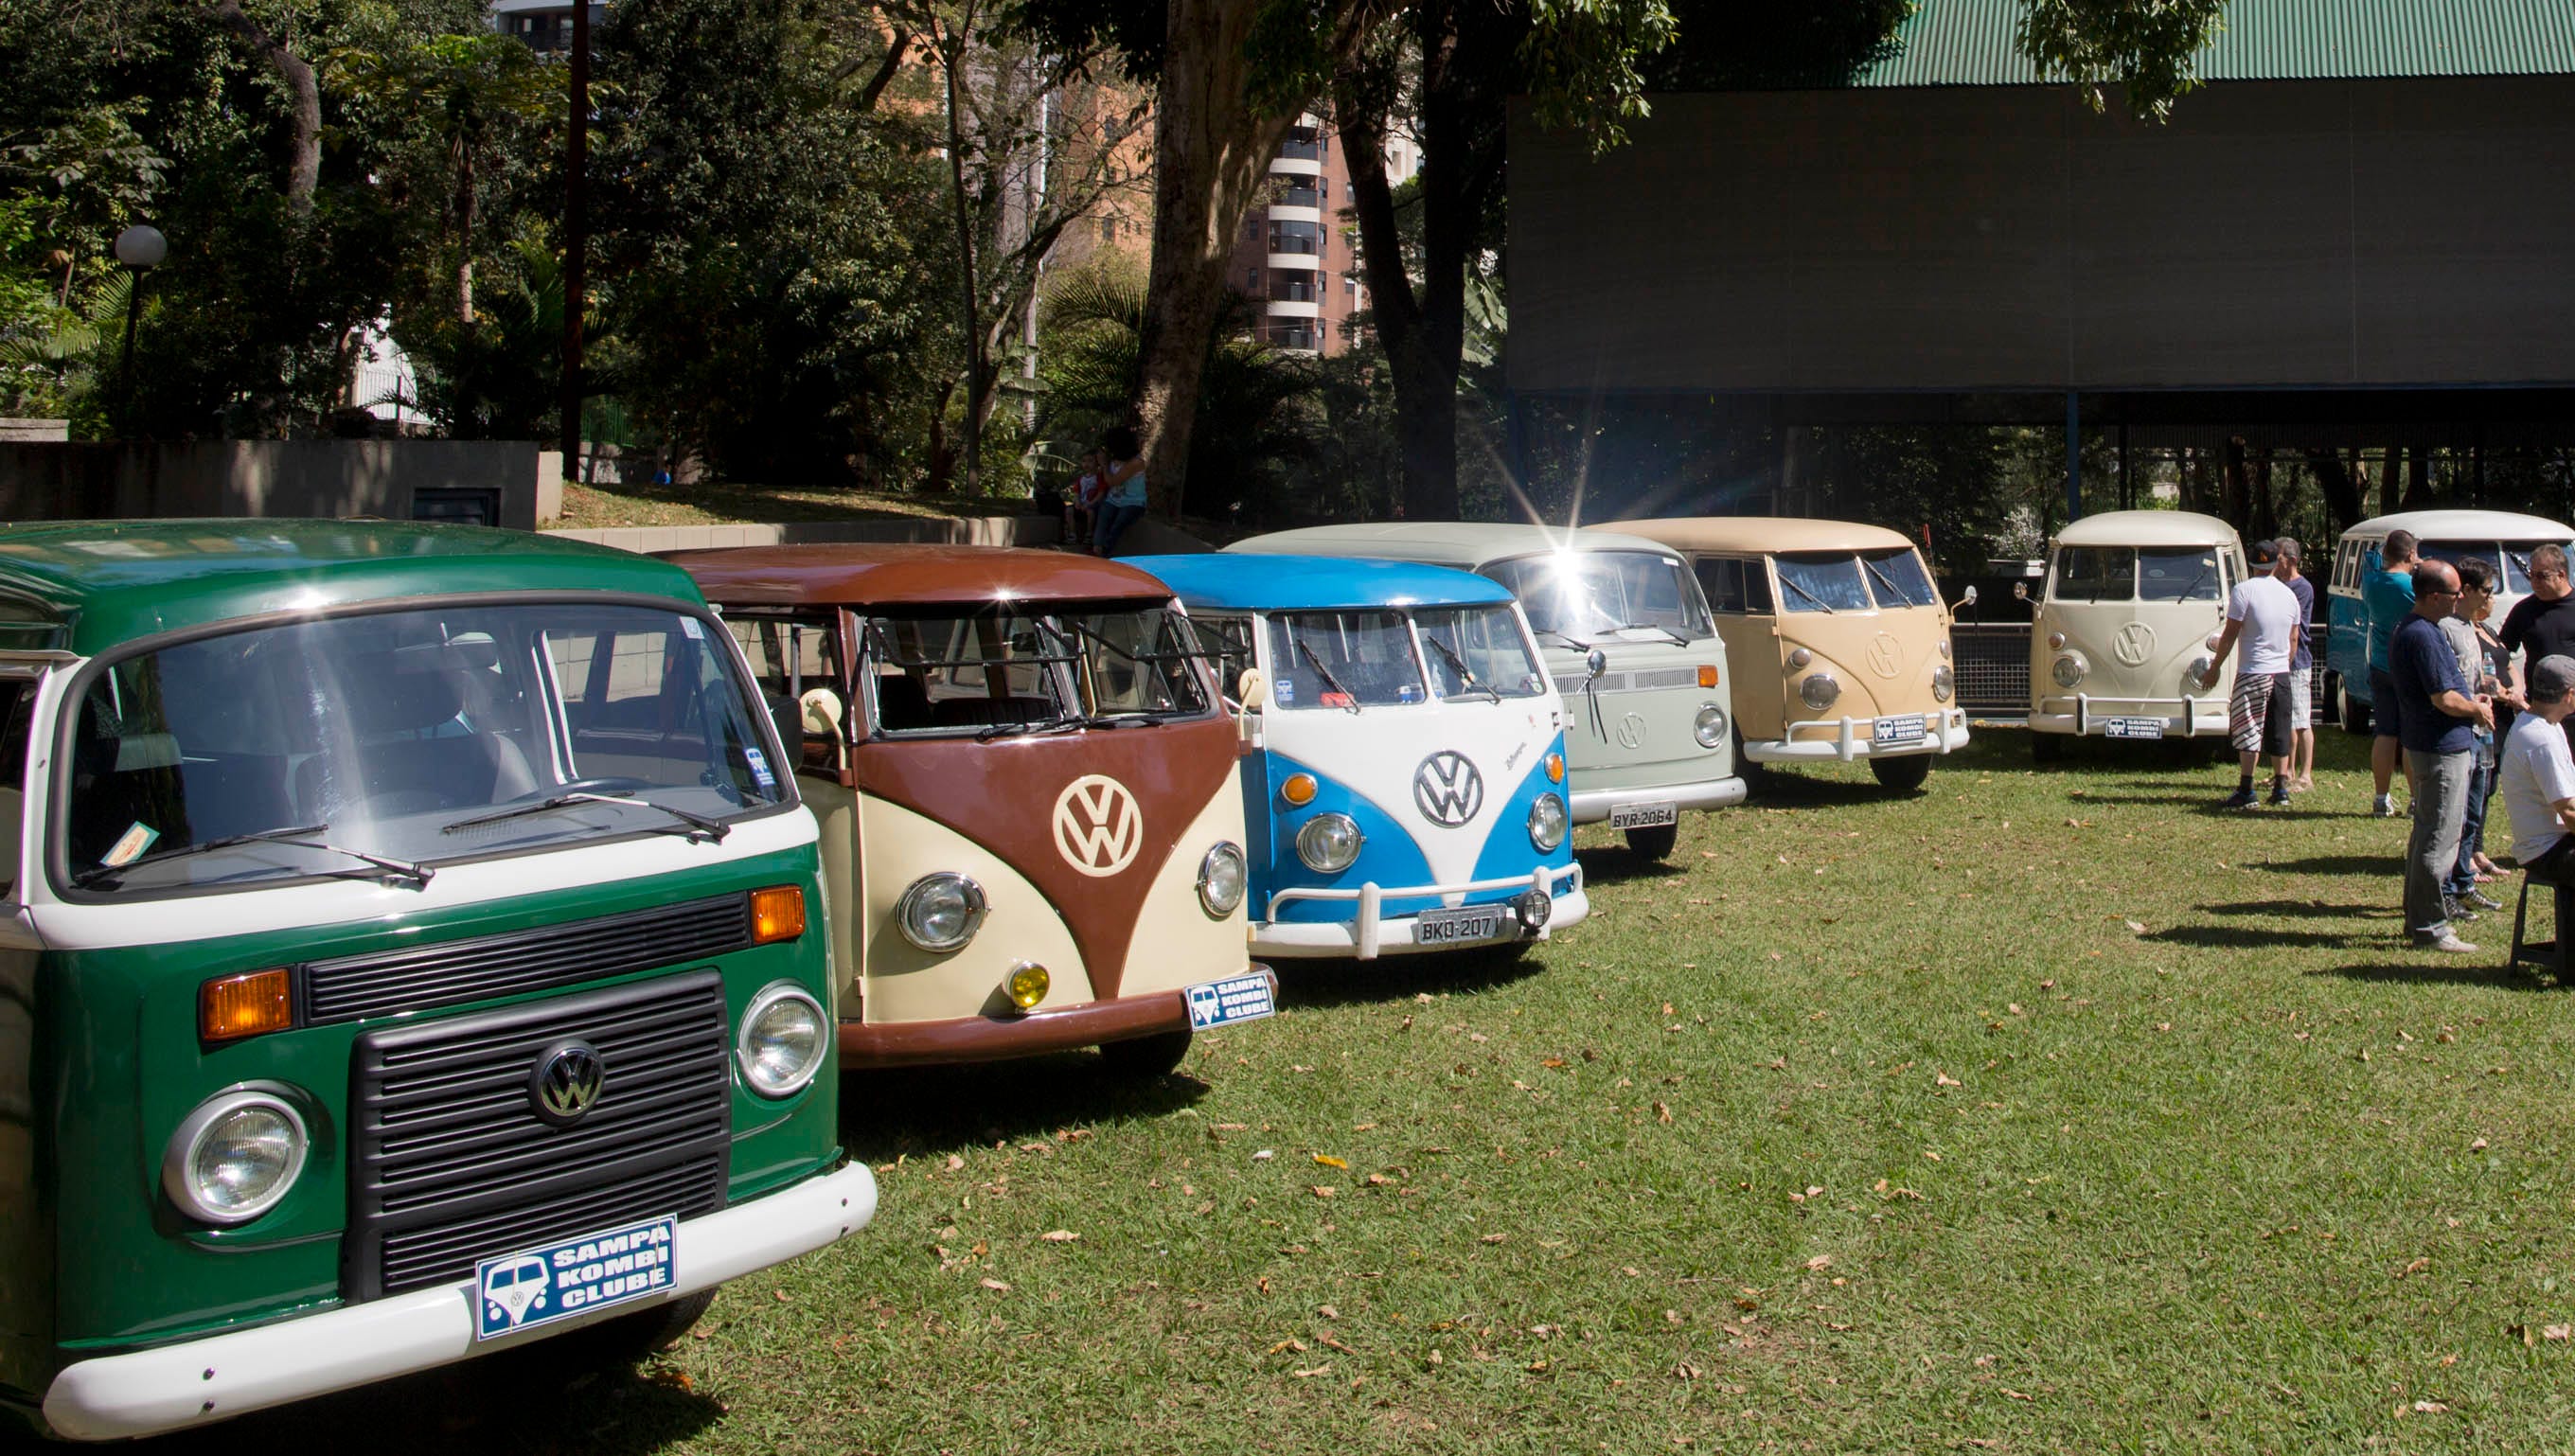 strange trip ending for VW's hippie van